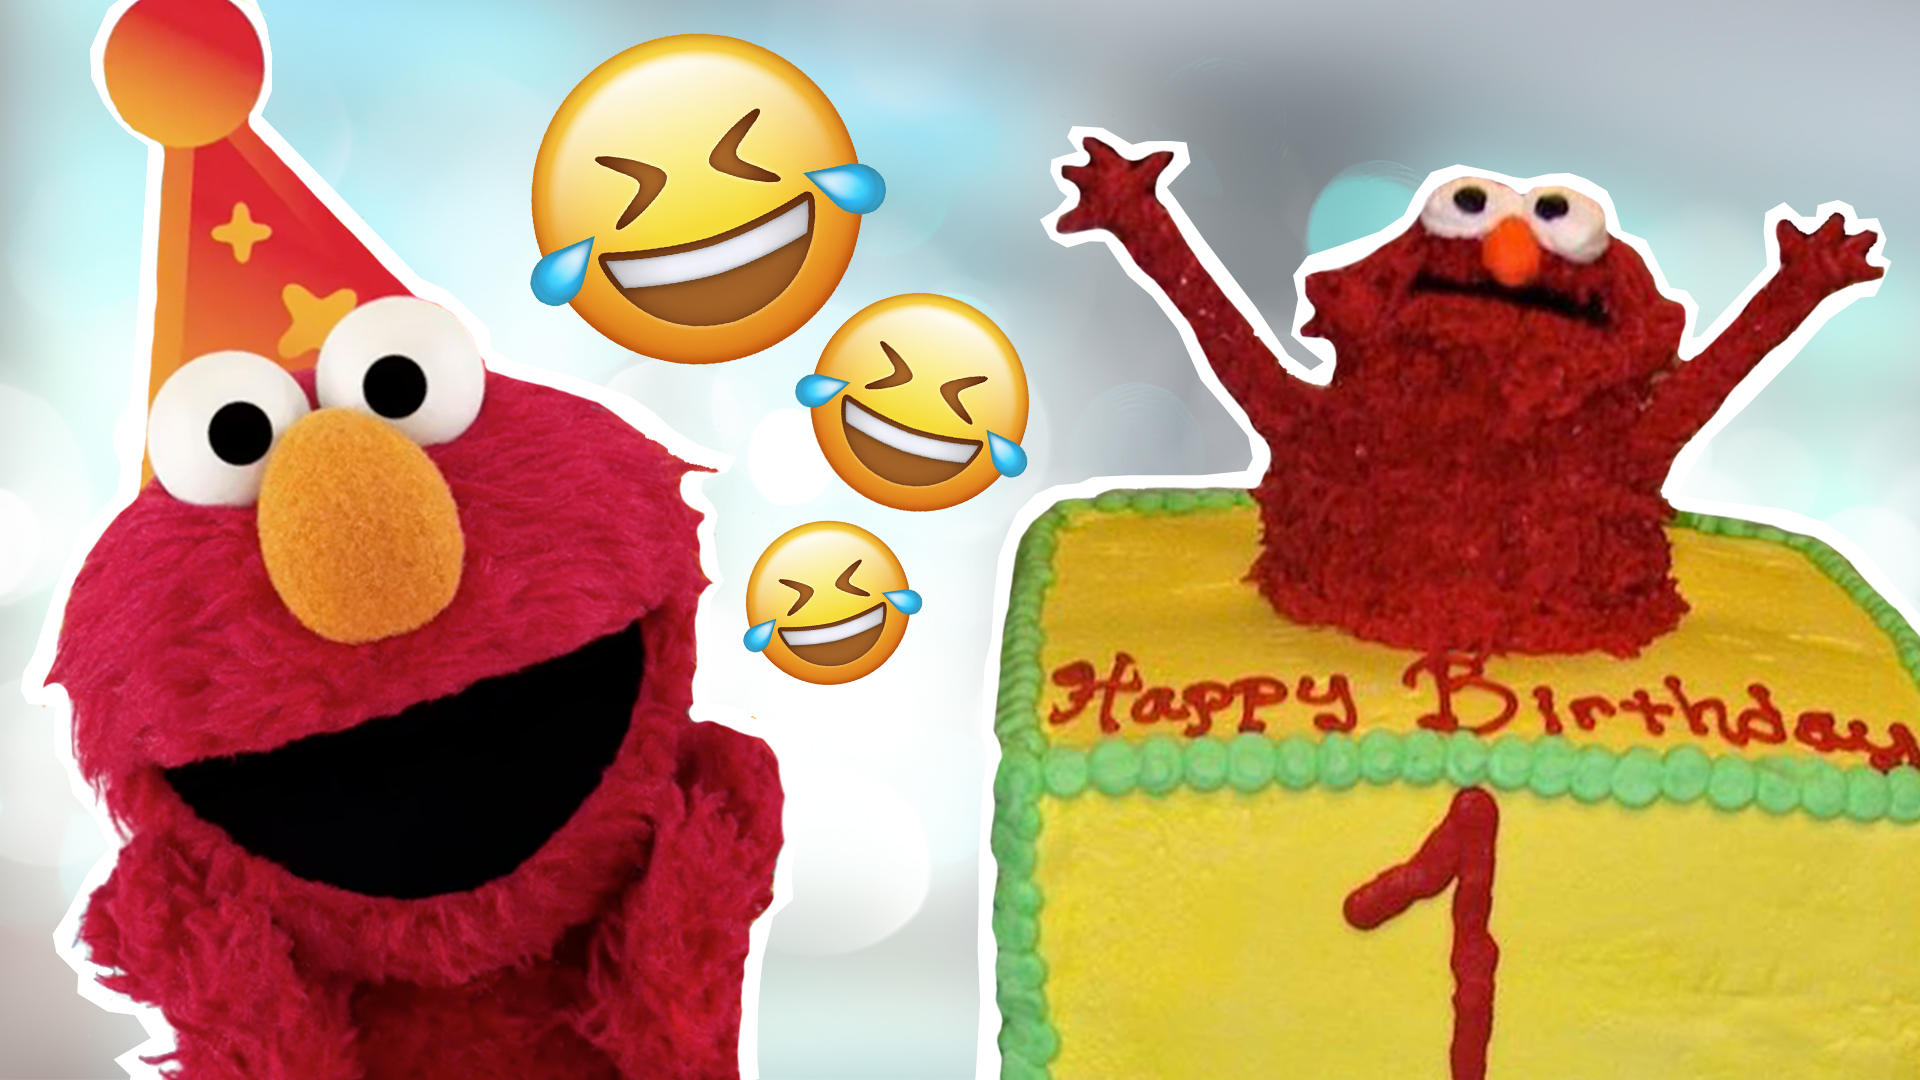 More Hilarious Cake Fails Cake Fails On Beano Com - roblox jailbreak birthday cake